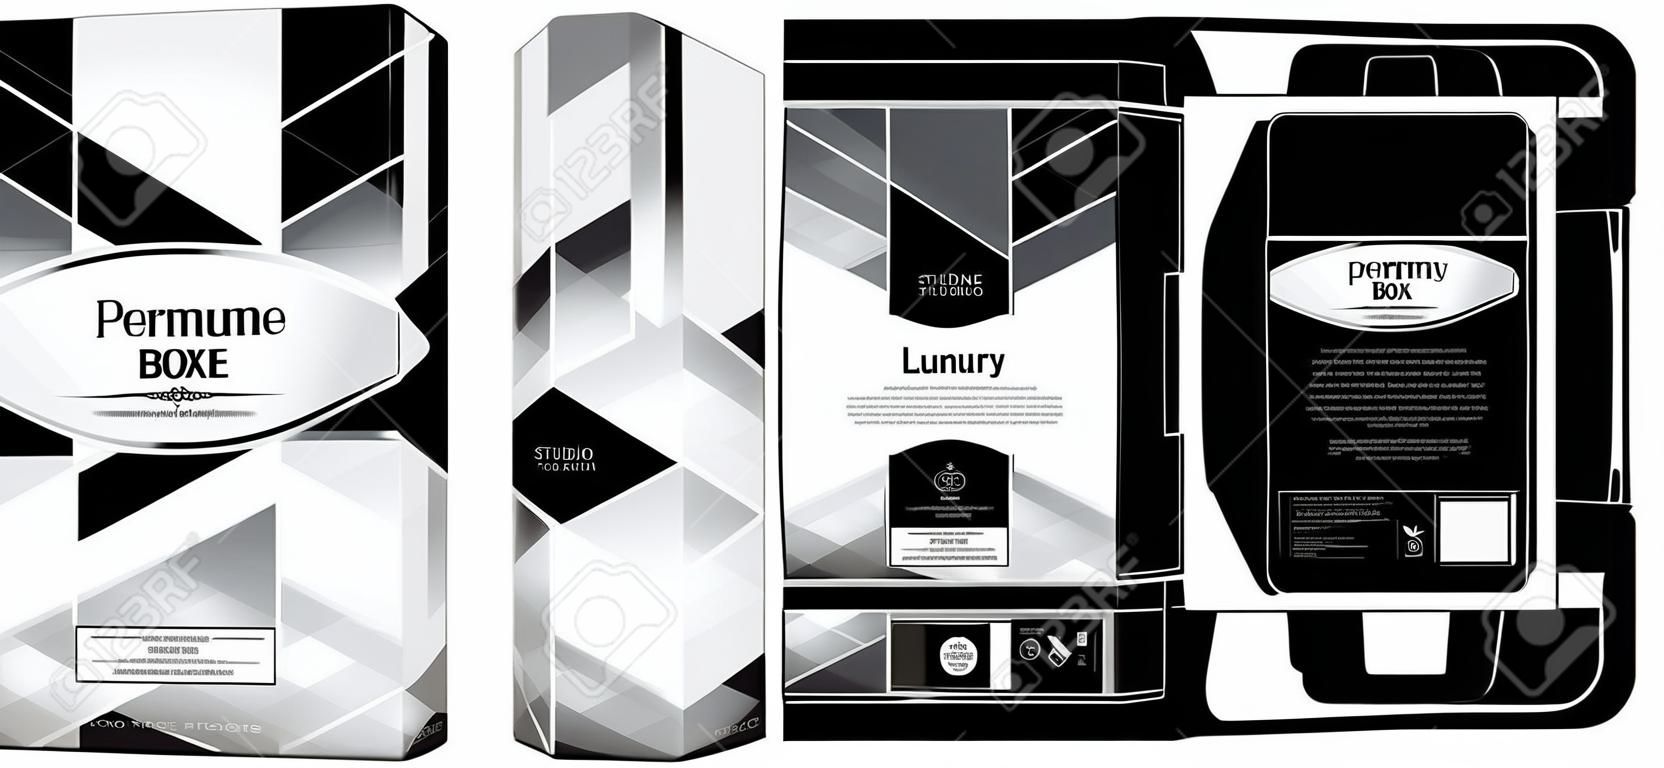 Verpakking ontwerp, parfum luxe doos ontwerp template en maquette doos. Illustratie vector.